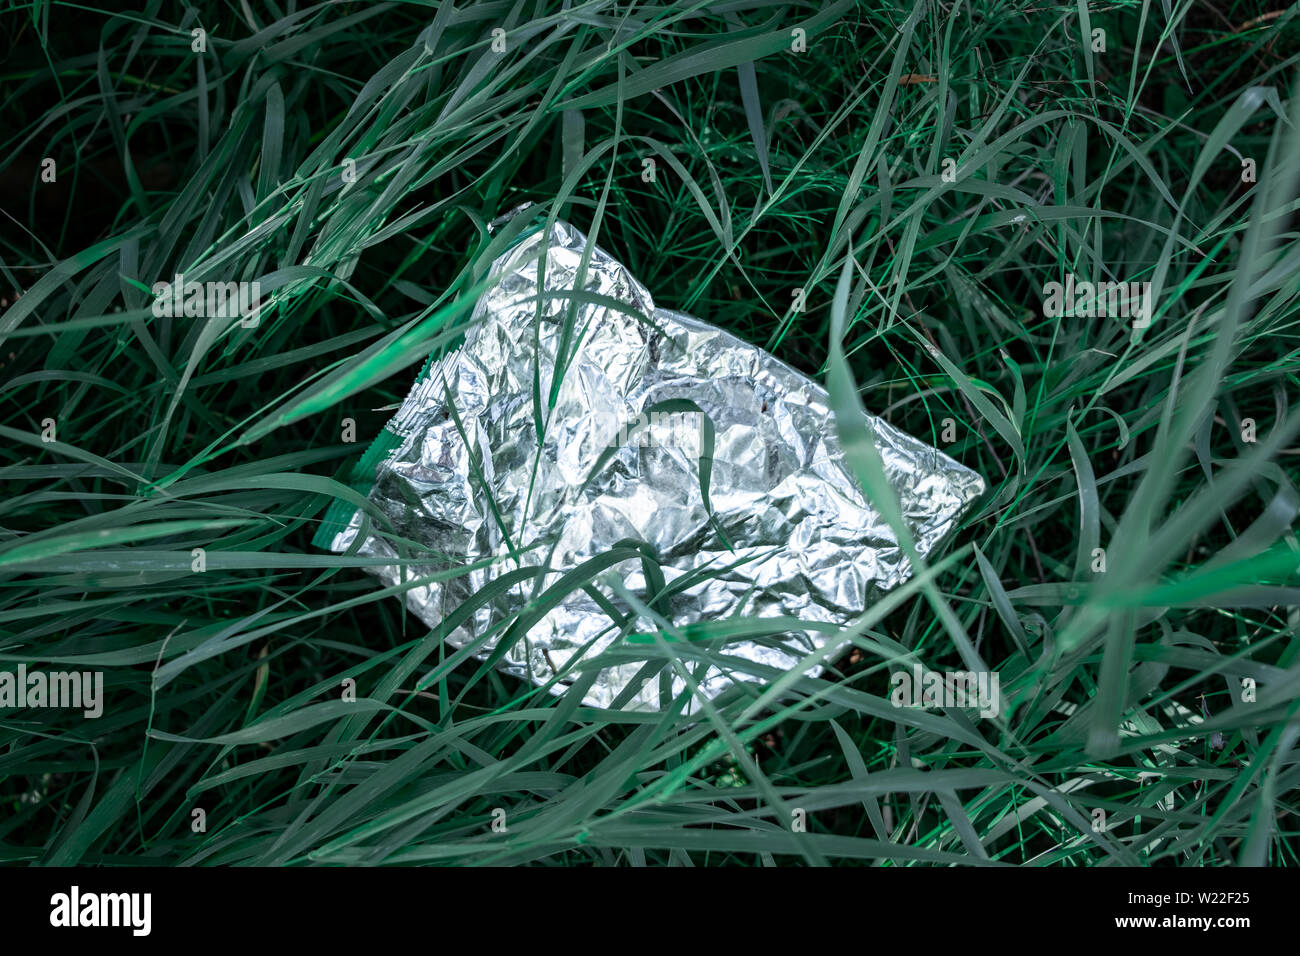 Sac en plastique dans l'herbe verte, la pollution de la nature concept. Morceau de déchets en plastique (vide emballage pour les produits alimentaires) jetés sur une pelouse, close-up view Banque D'Images